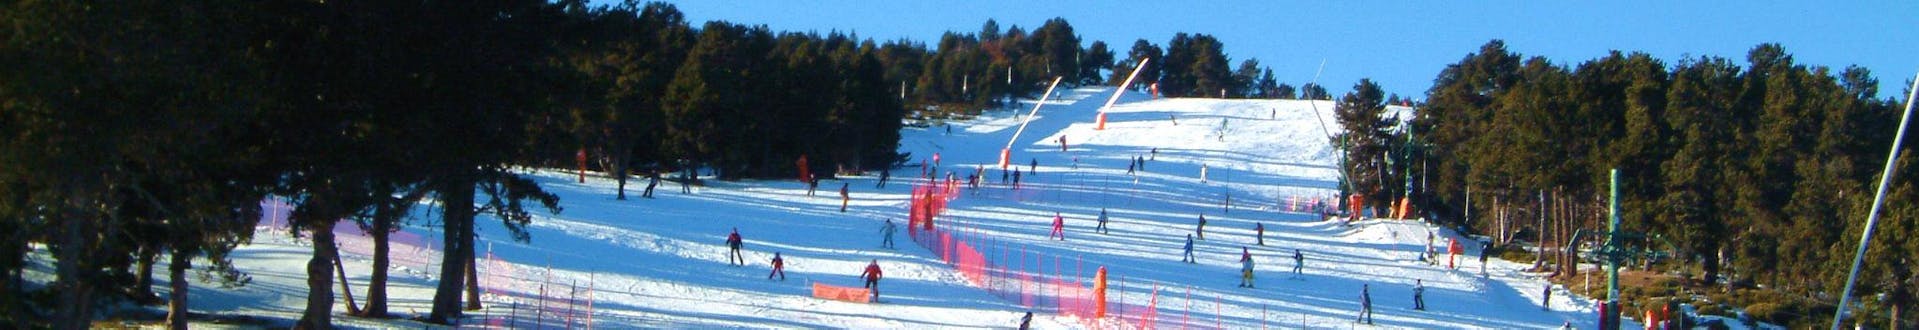 Unos esquiadores descienden por las pistas nevadas de la estación de esquí francesa Romeu en los Pirineos.